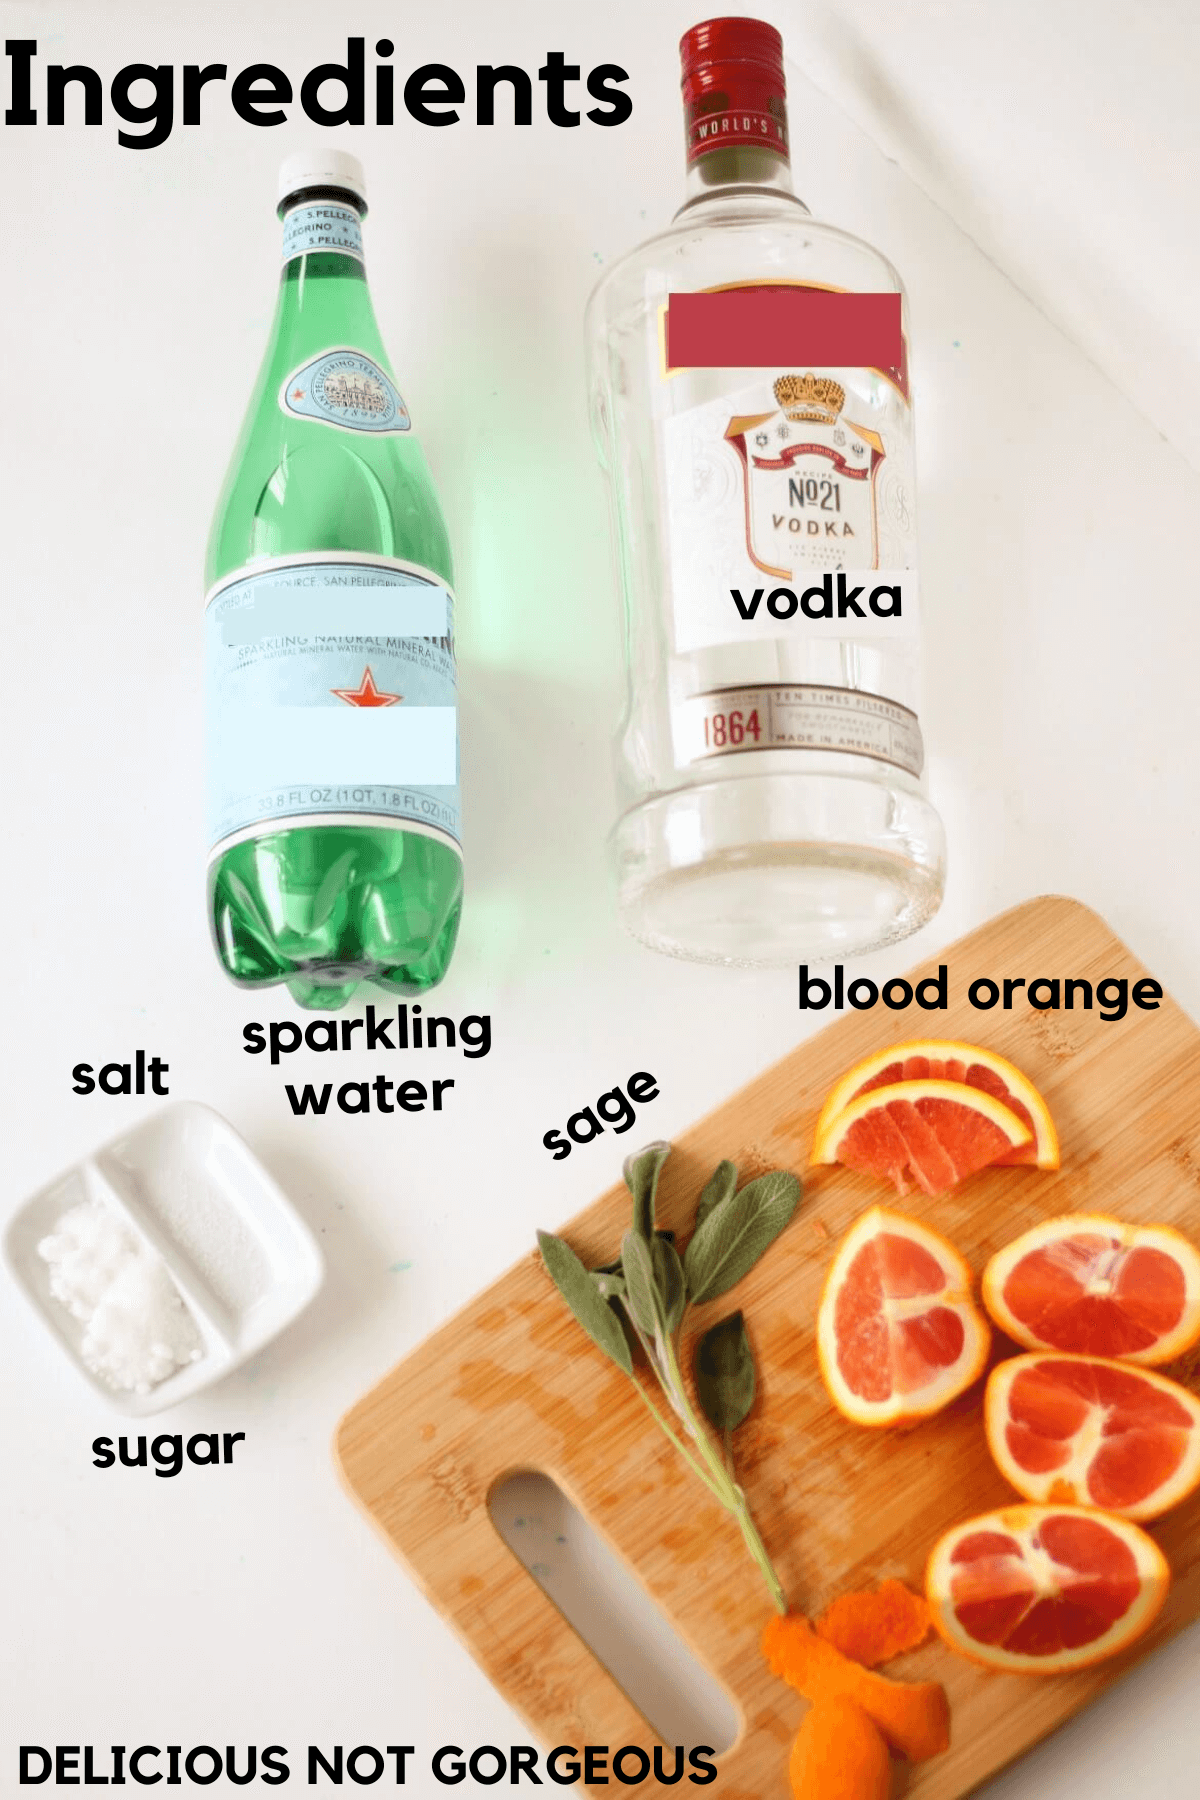 Ingredients laid out, including a green plastic bottle of sparkling water, a glass bottle of vodka, sliced blood oranges, sage leaves, blood orange peel, sugar and salt.